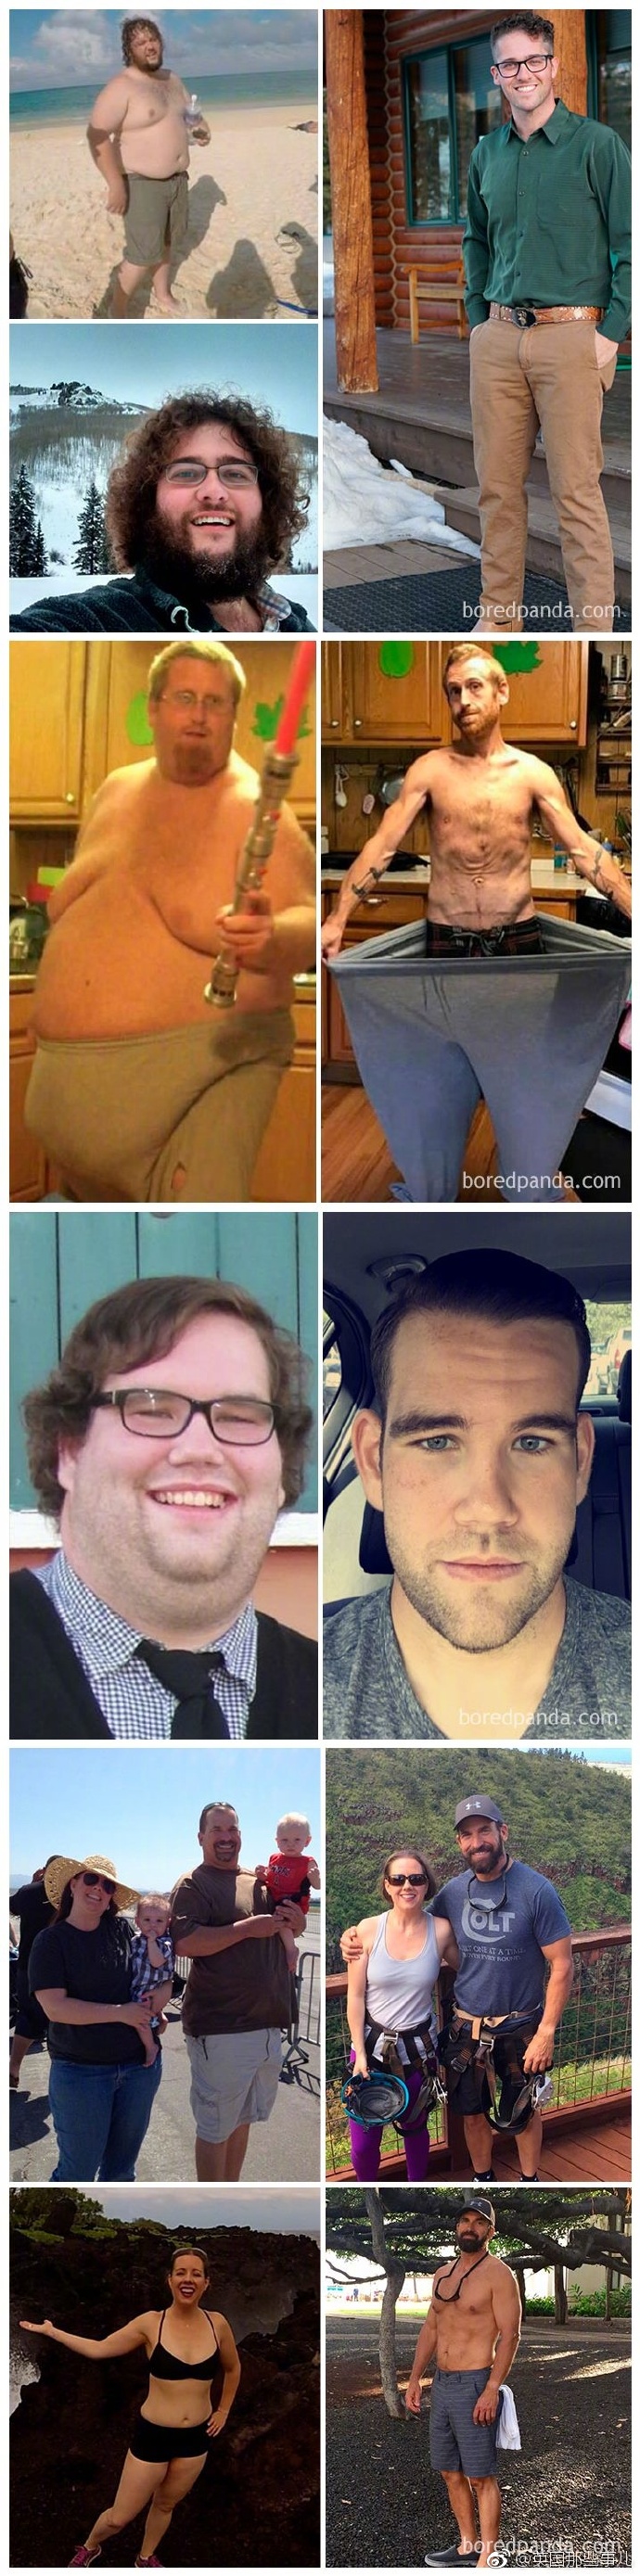 borepanda上又一群网友贴出了他们减肥瘦下来前后的样子